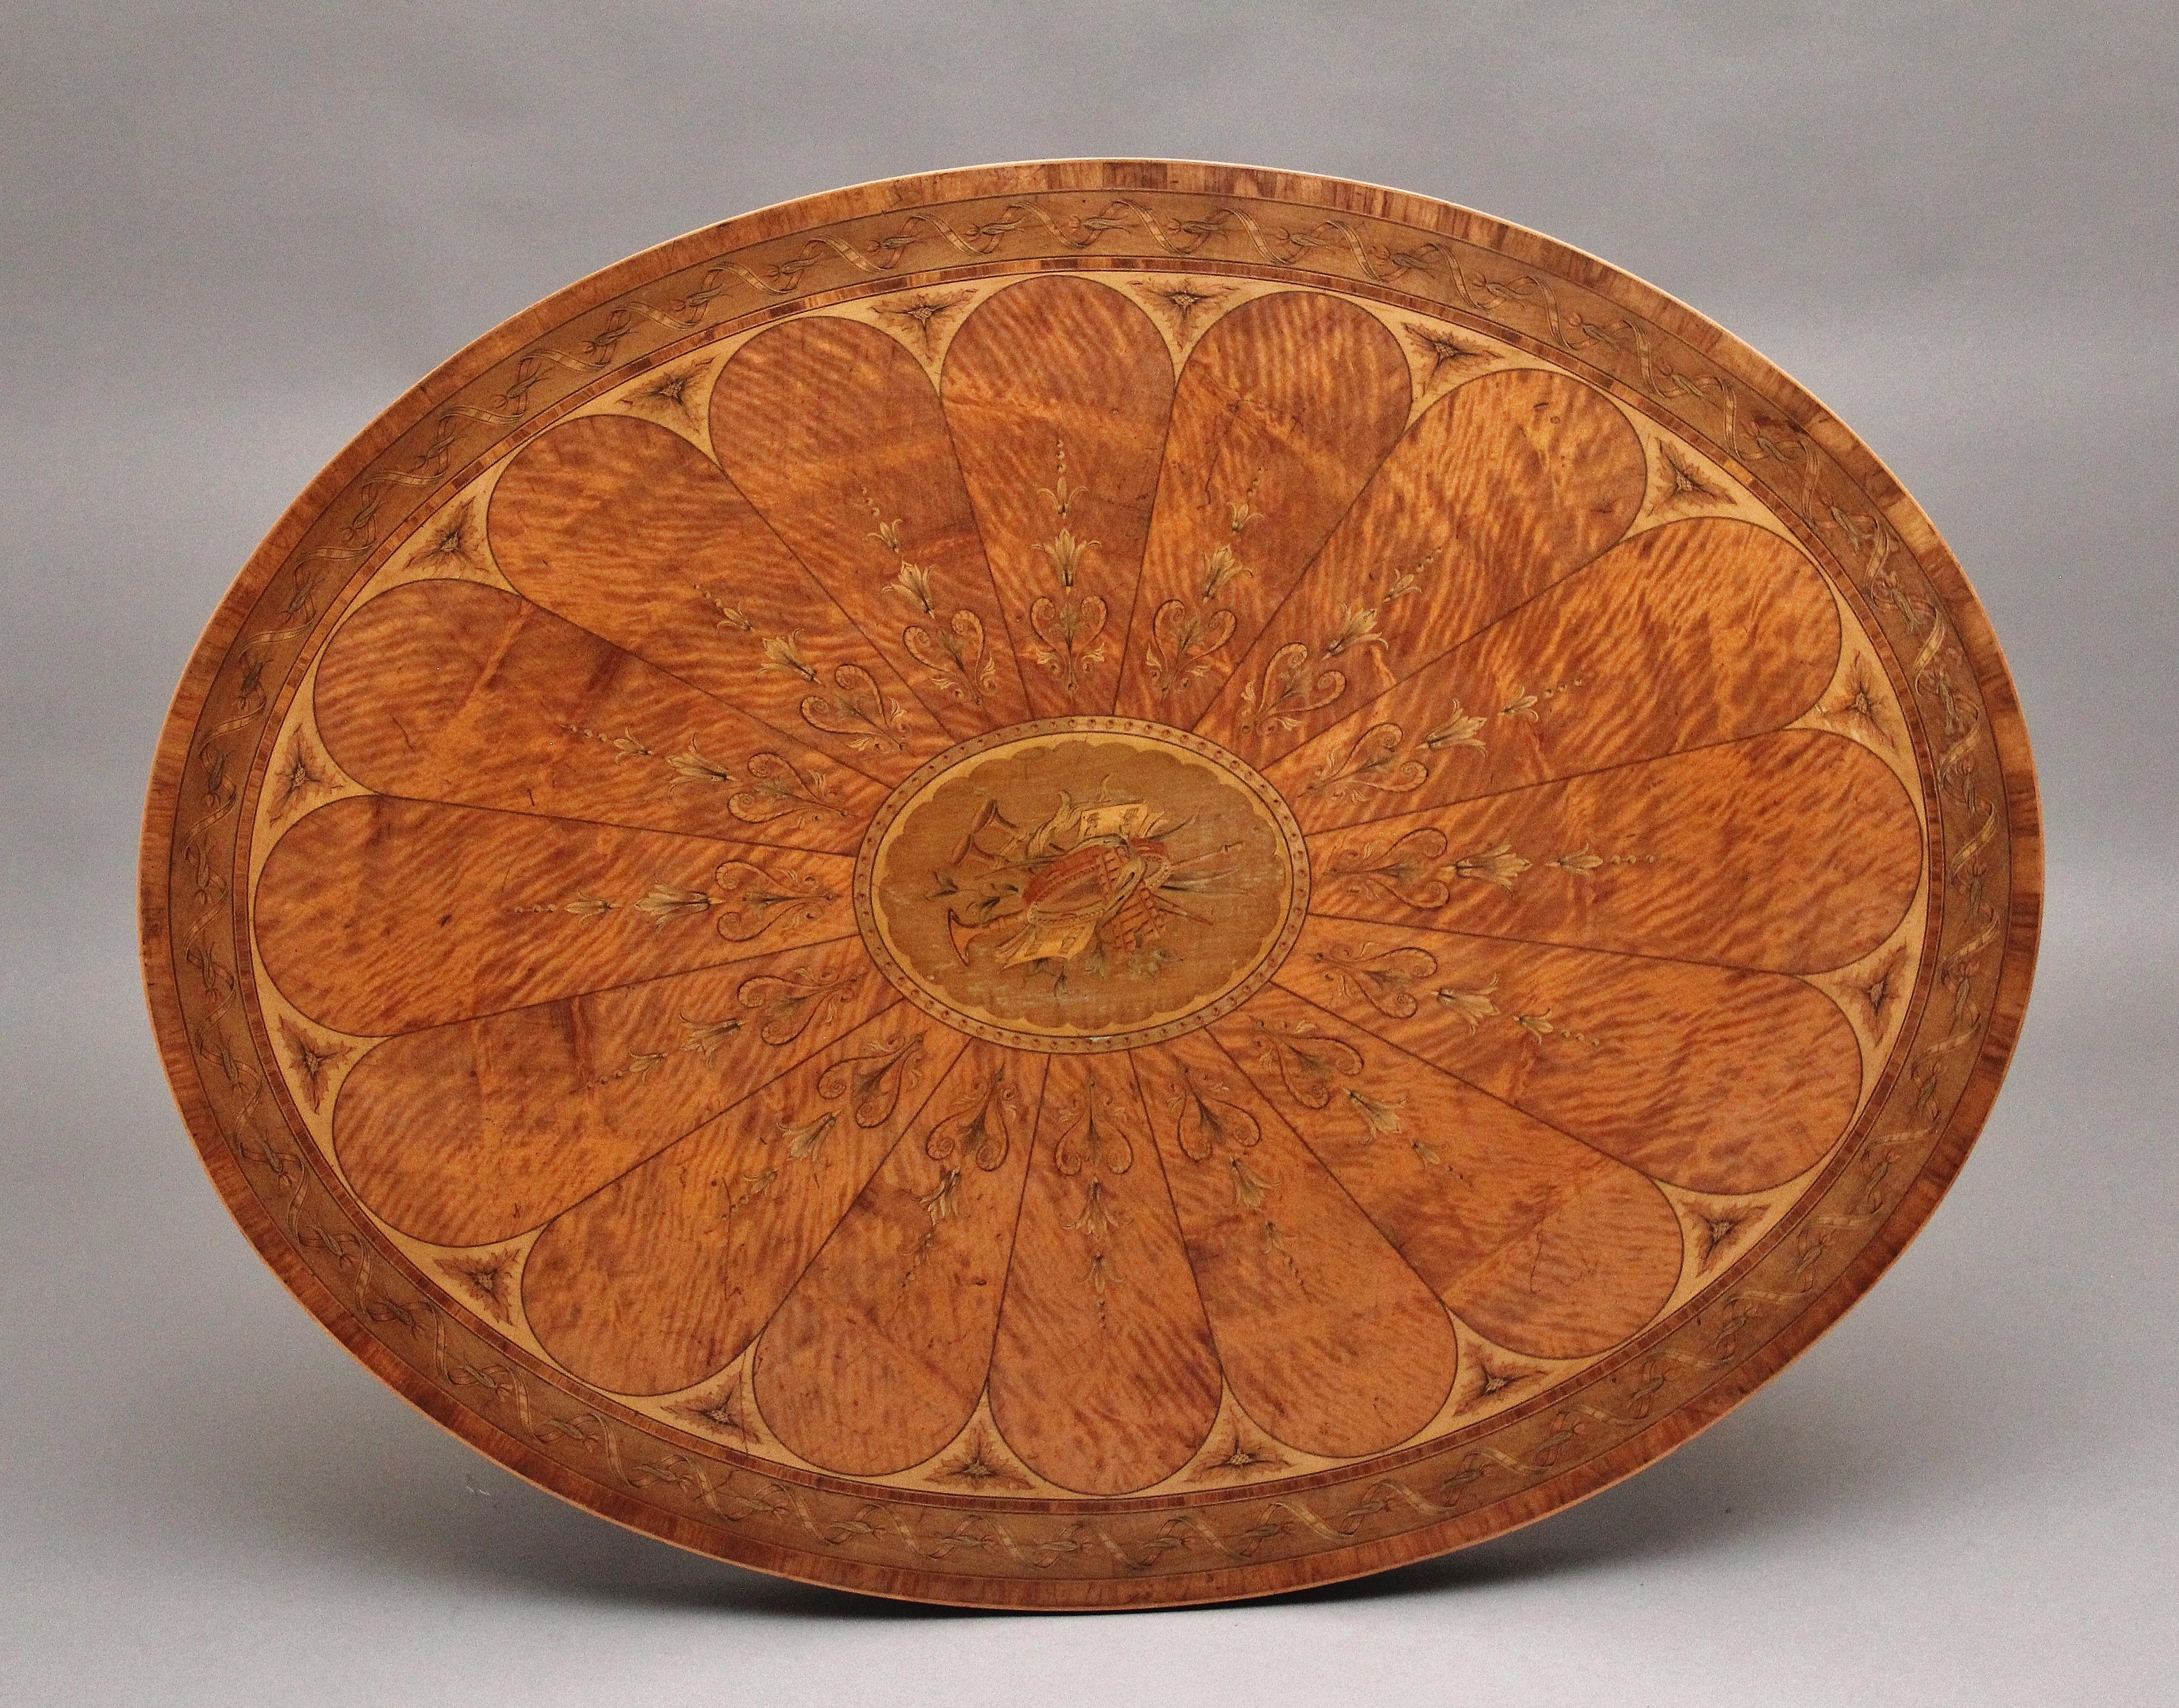 Ein hochdekorativer und qualitativ hochwertiger Tisch aus satiniertem Holz des 19. Jahrhunderts im Sheraton-Stil. Die ovale Platte ist über und über mit Intarsien aus verschiedenen Pflanzen, geformten Paneelen und einer komplizierten